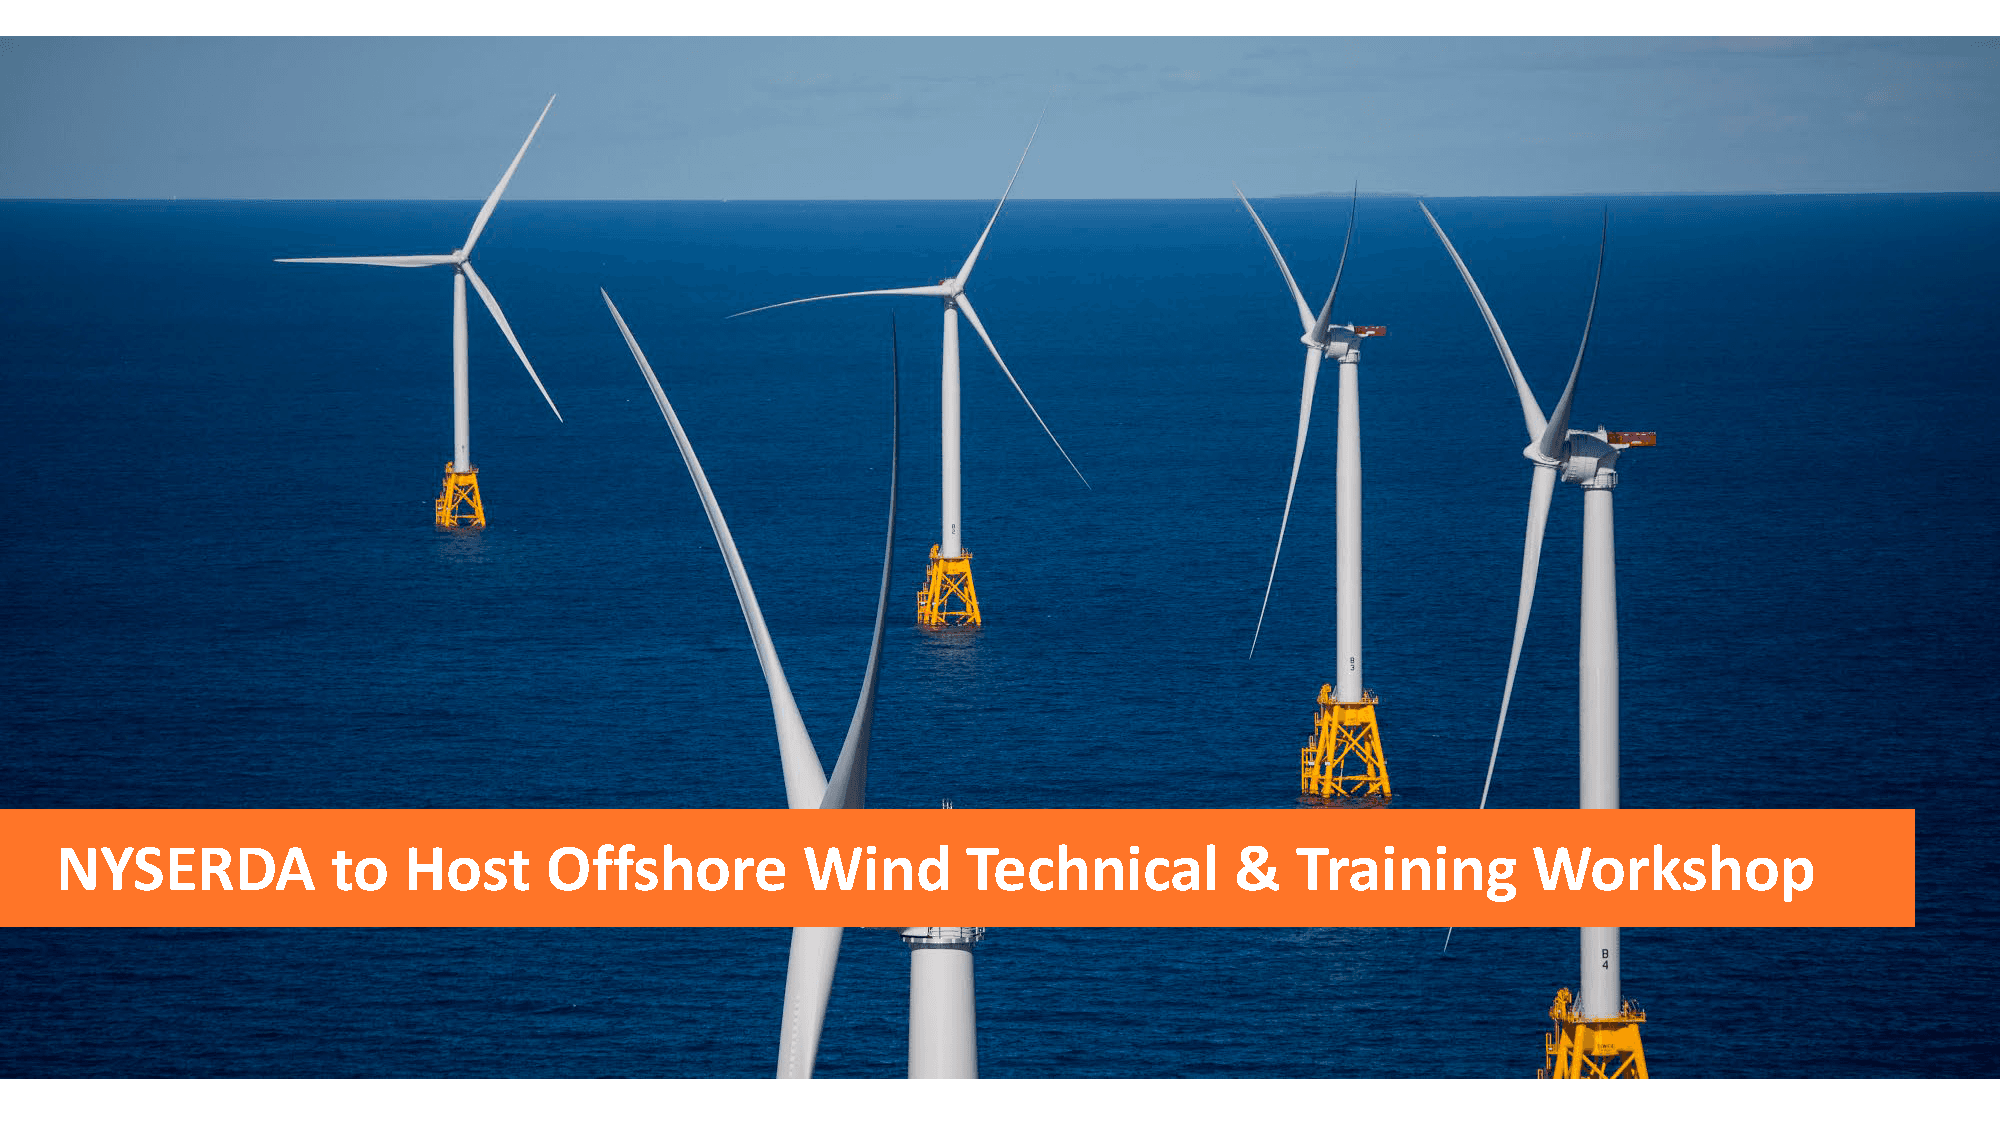 NYSERDA Offshore Wind Workshop Webpage Slide